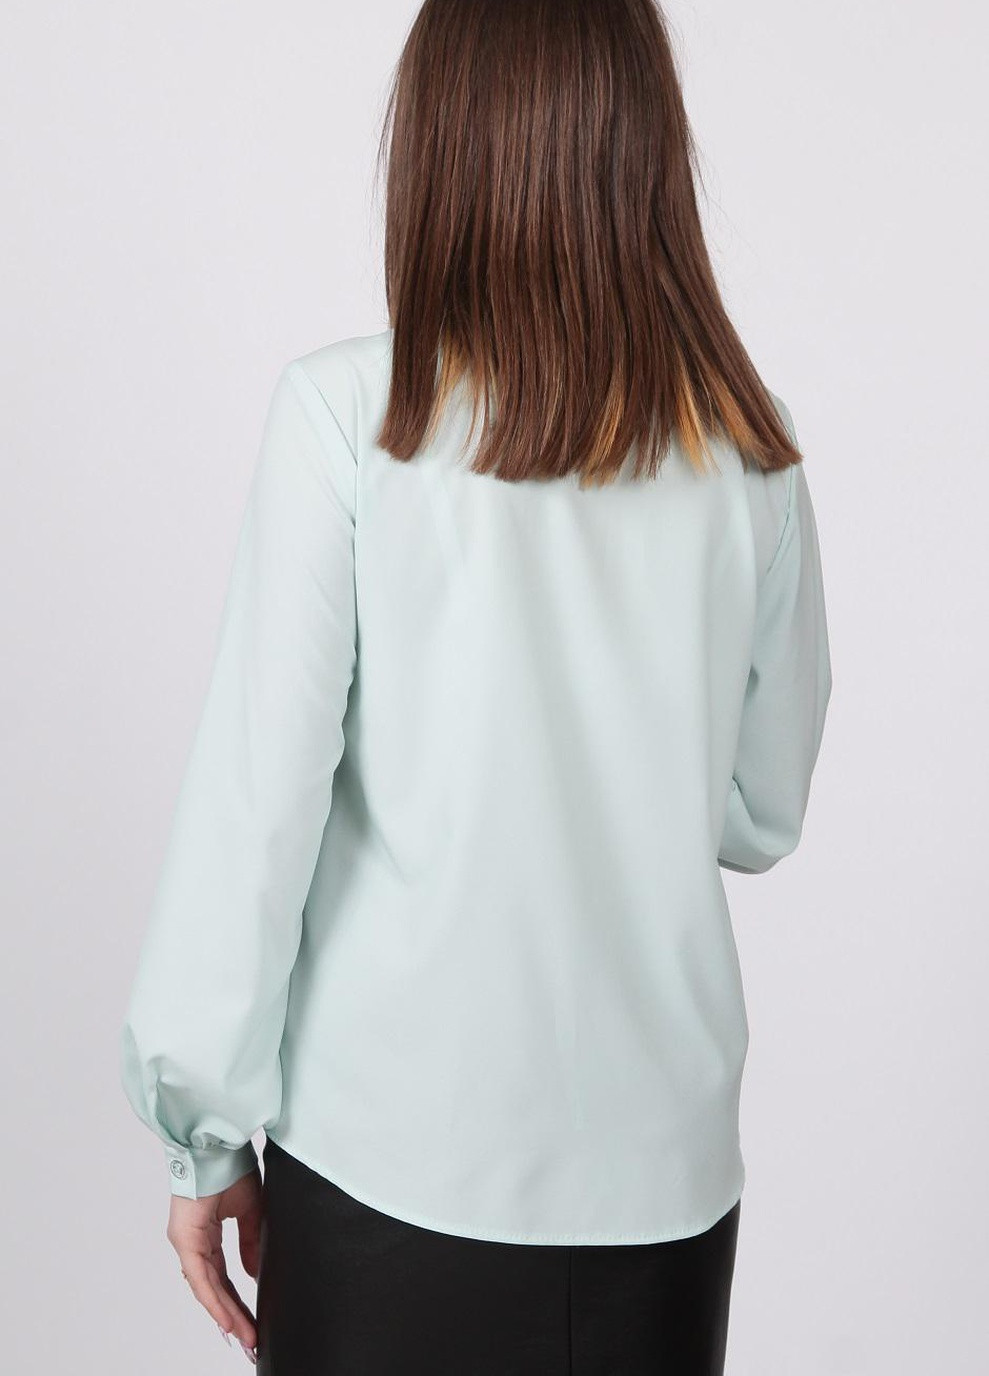 Светло-бирюзовая летняя блузка 052 софт светло-бирюзовый Актуаль